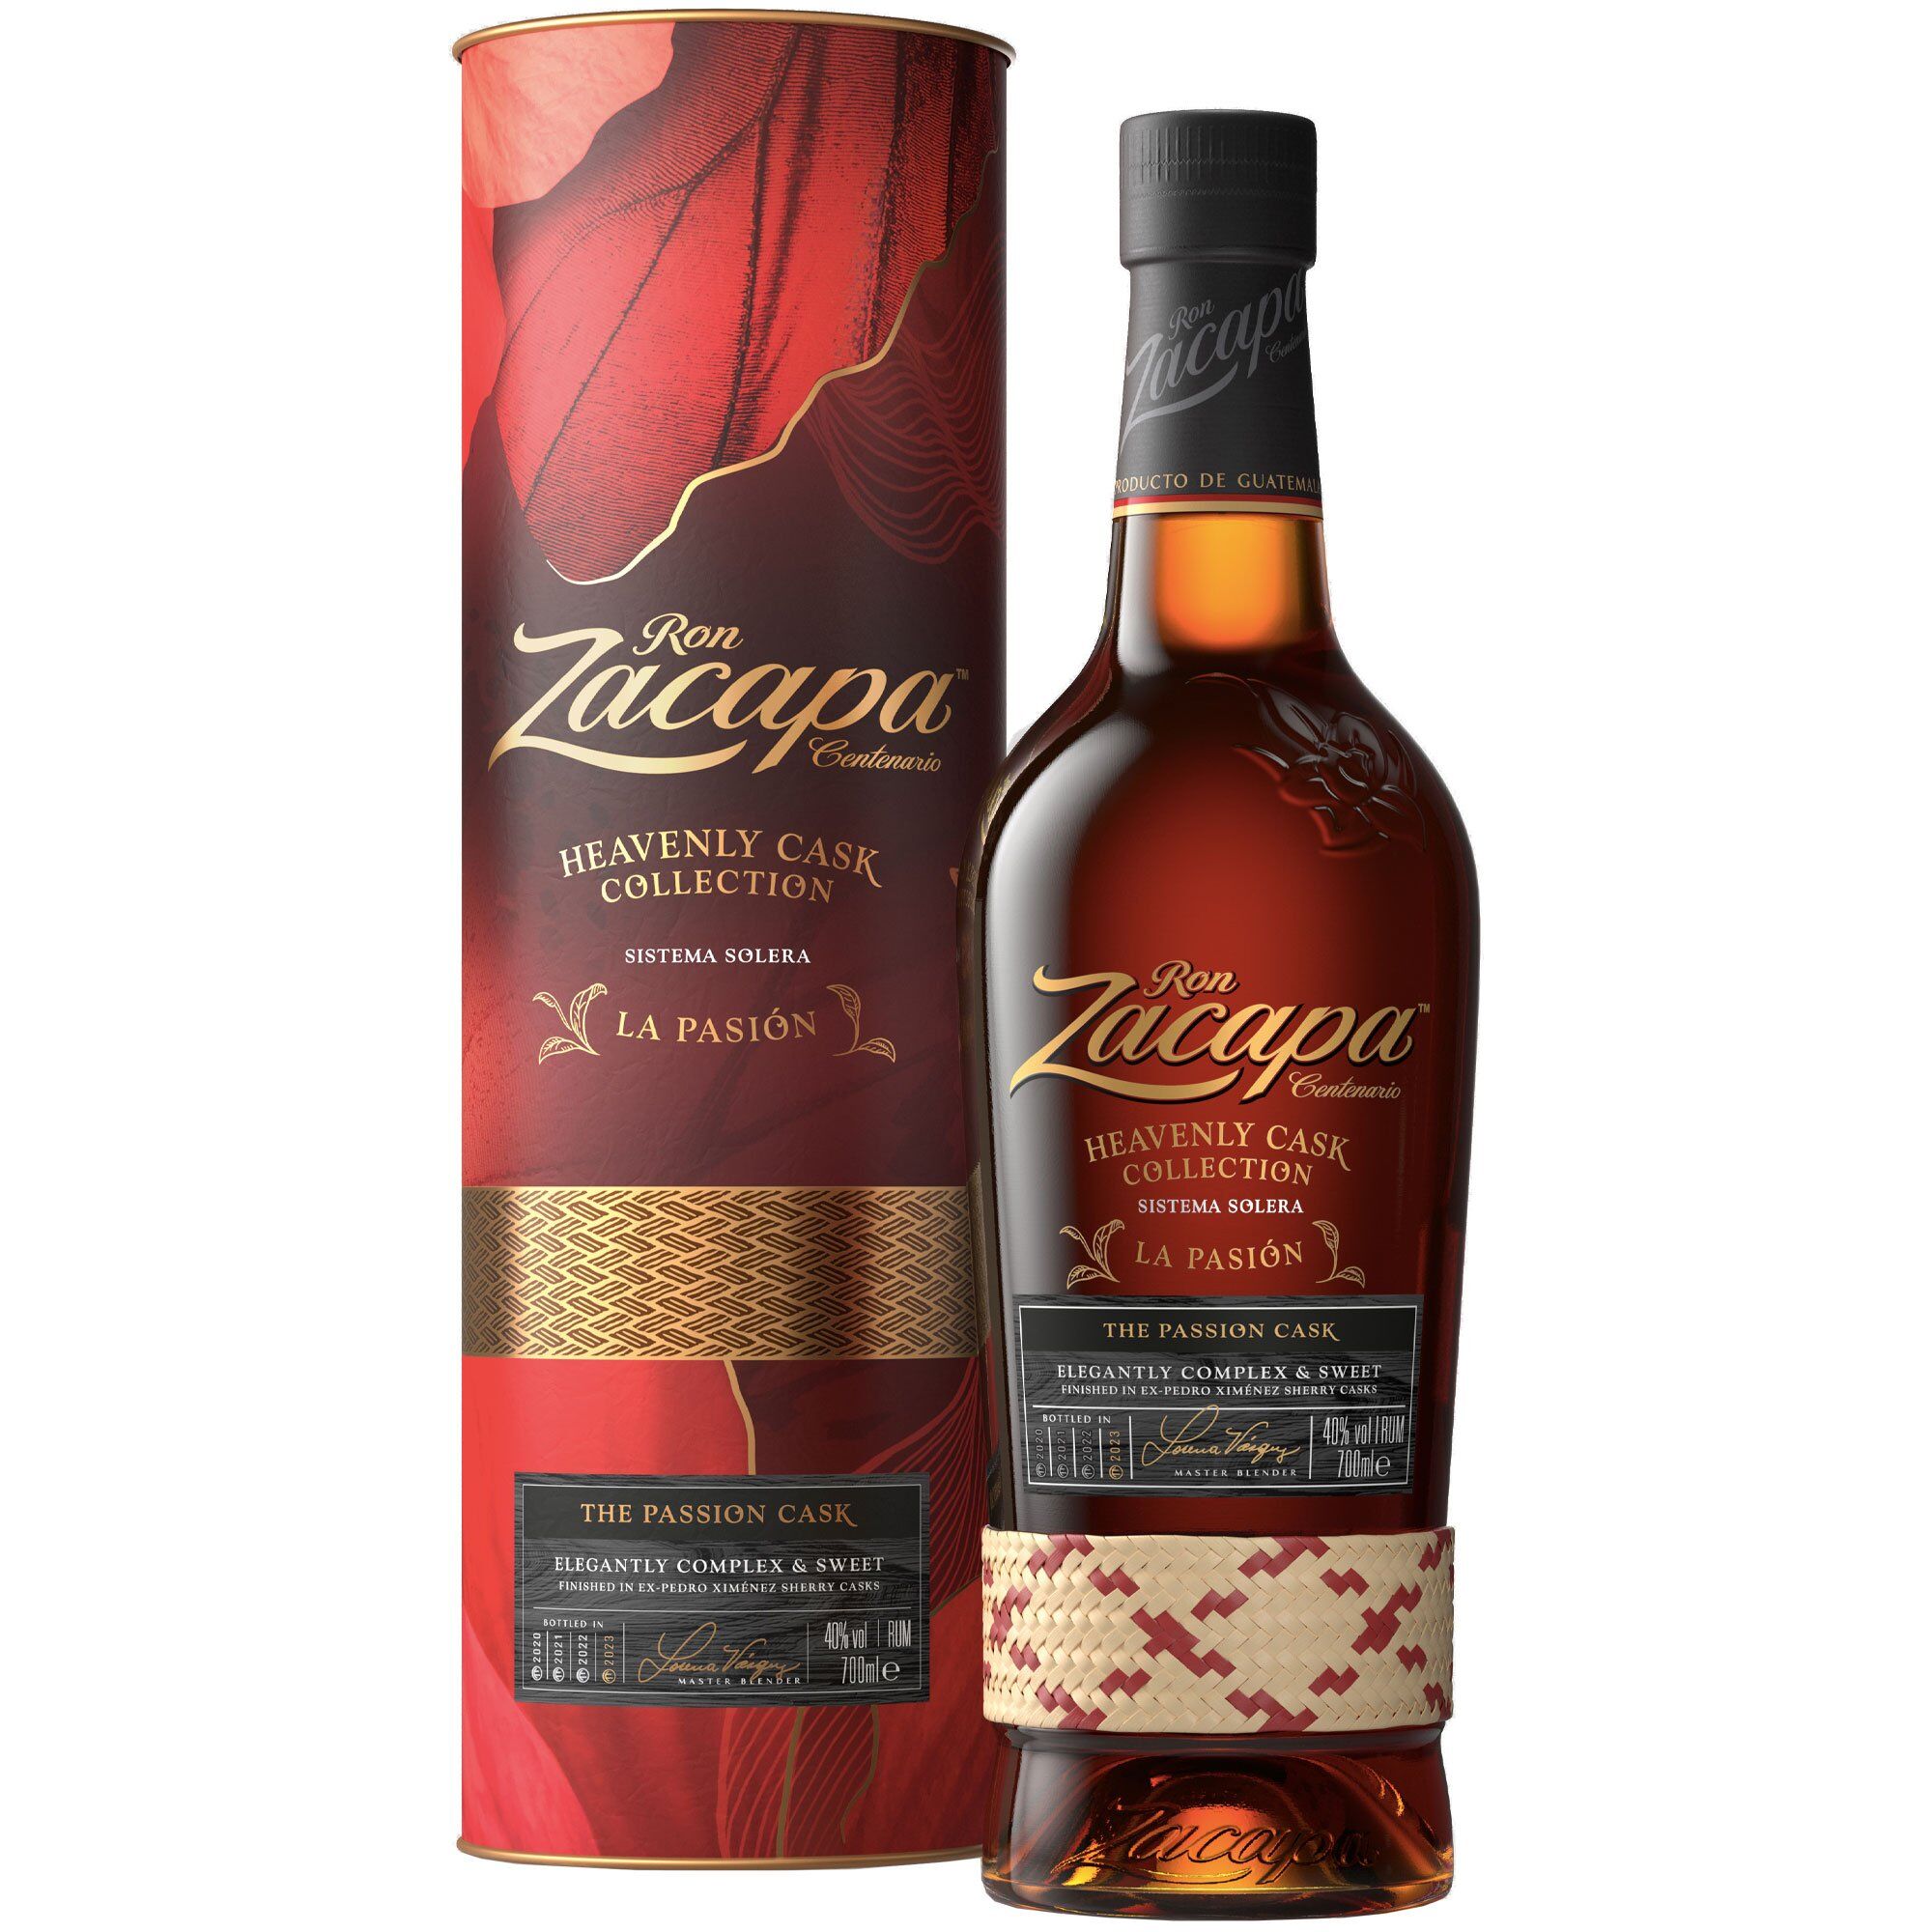 Zacapa Rum “heavenly Cask Collection La Pasión” Limited Edition